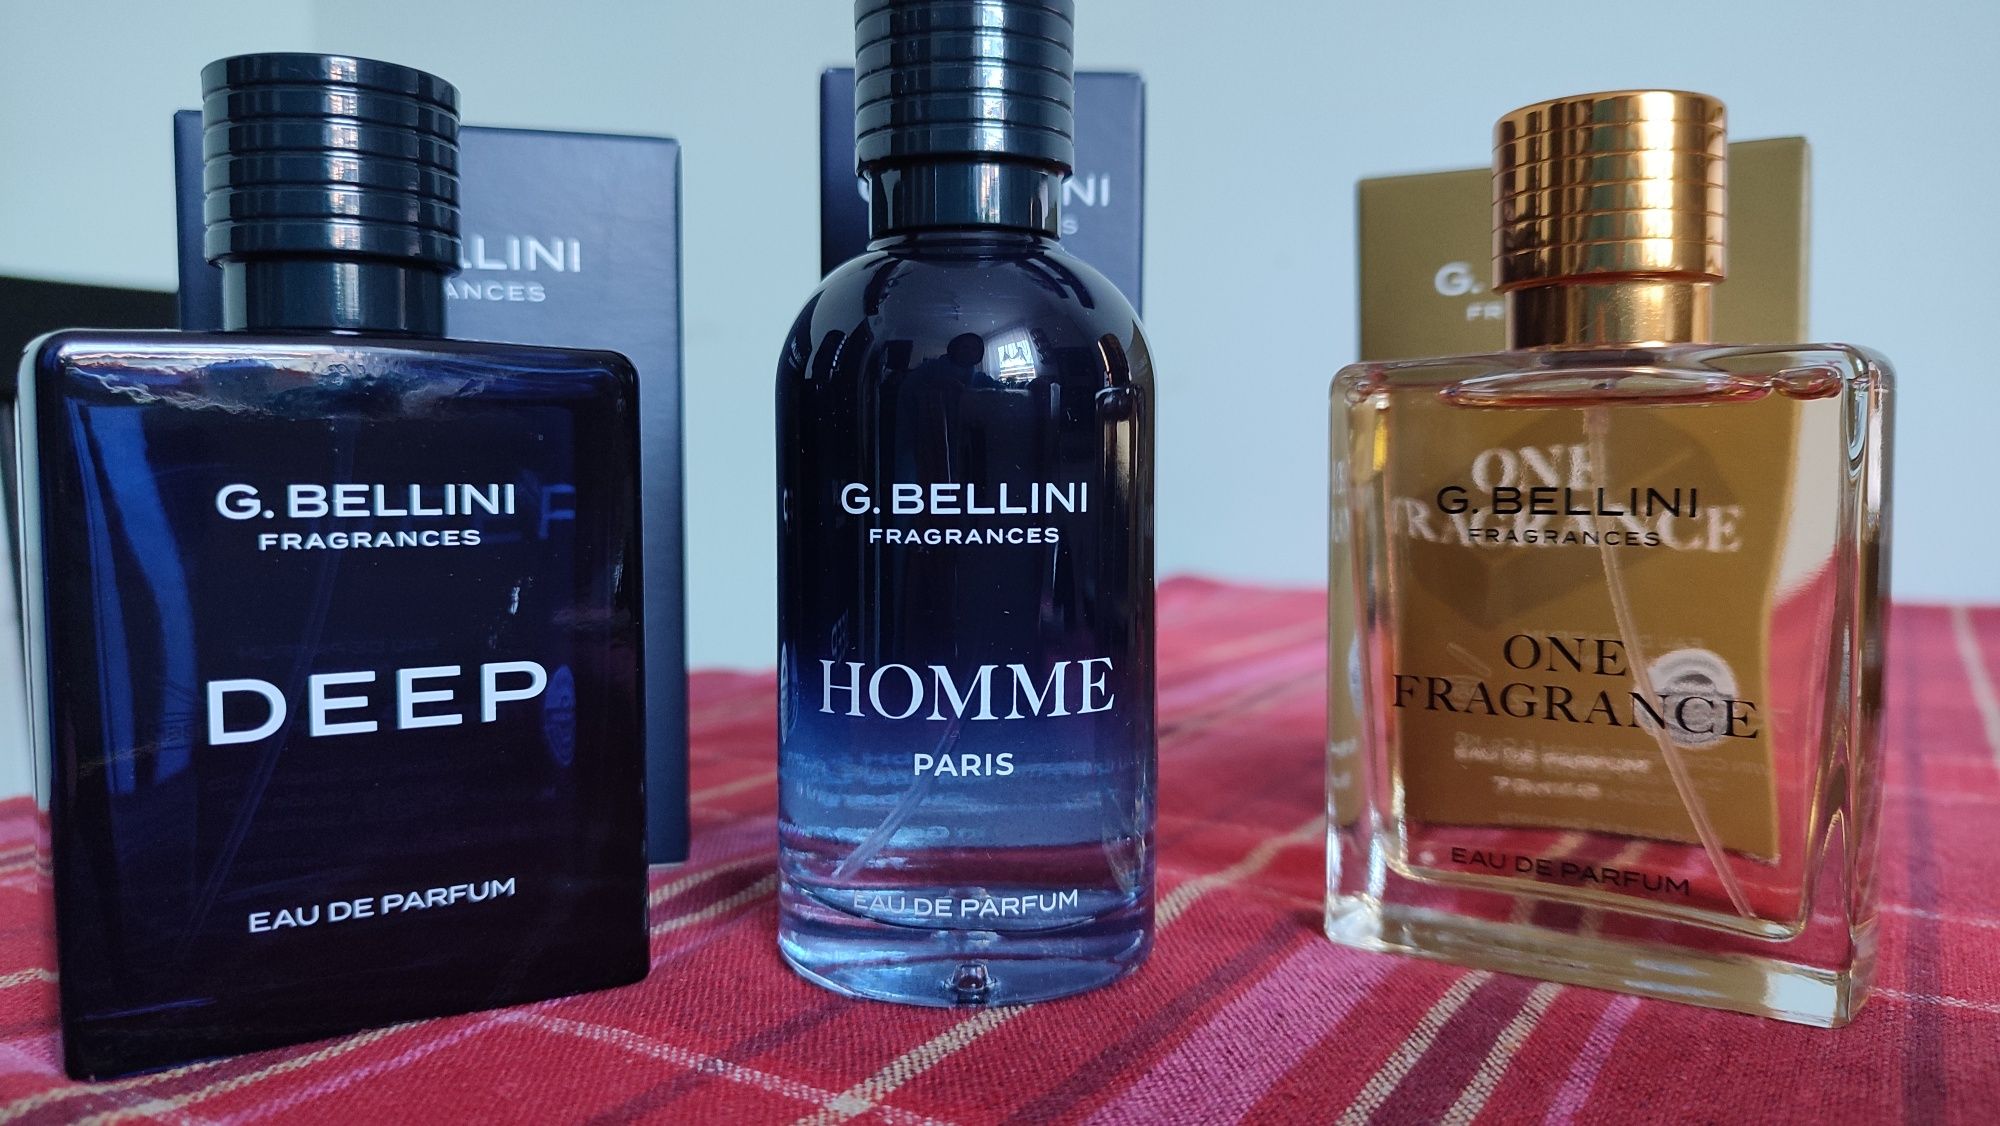 Homme 1szt+One Fragrance 1szt+Deep- G.Bellini-zapach męski